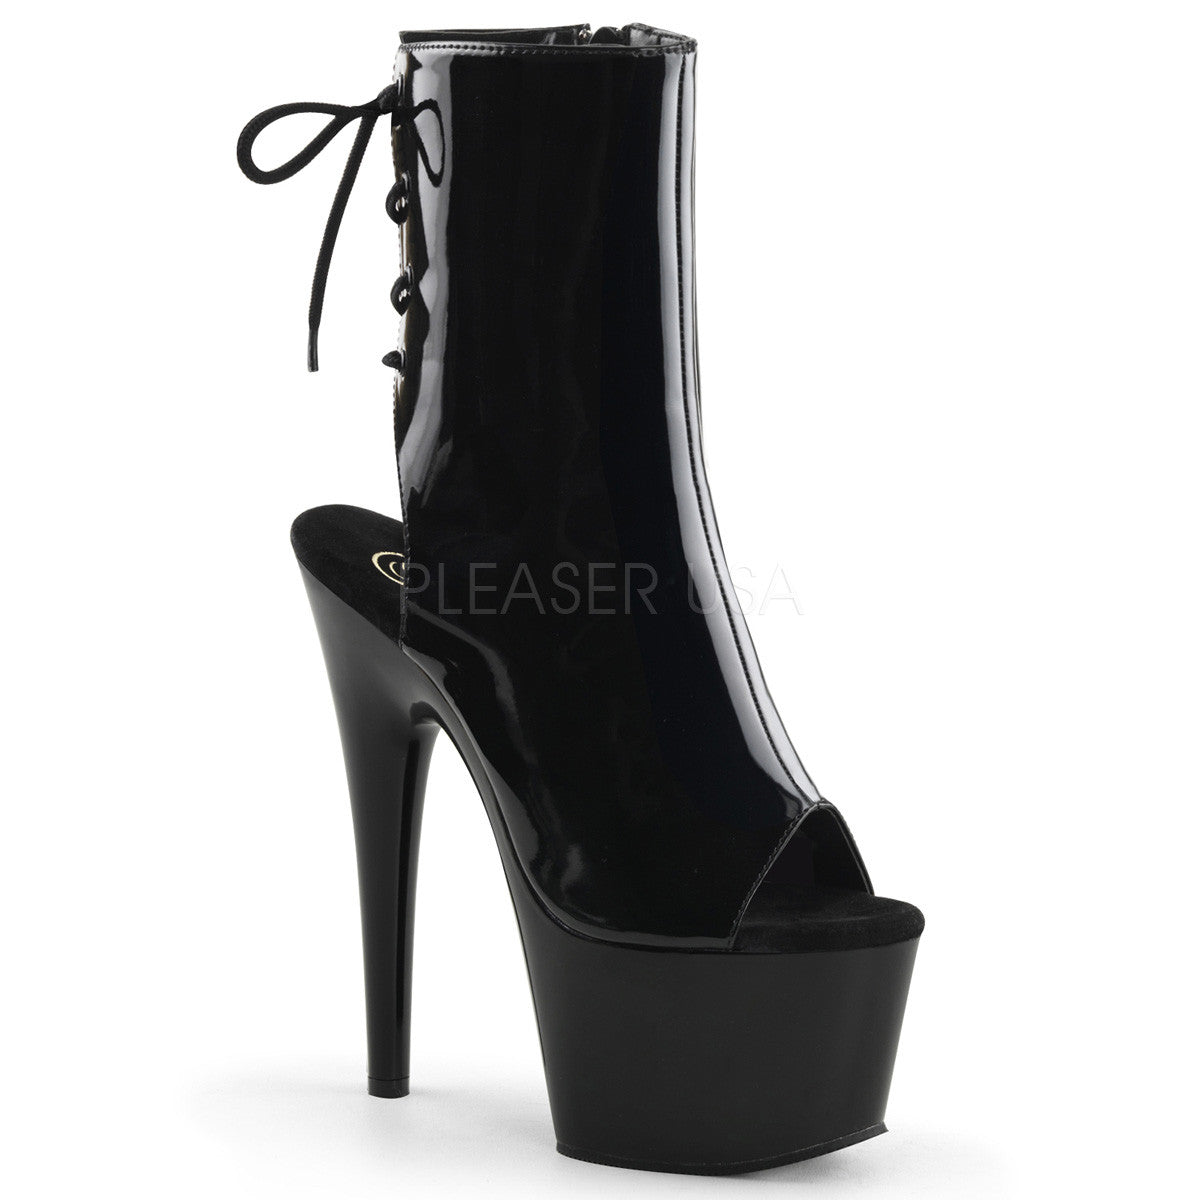 Pleaser ADORE-1018 Black Patent Ankle Boots - Shoecup.com - 1